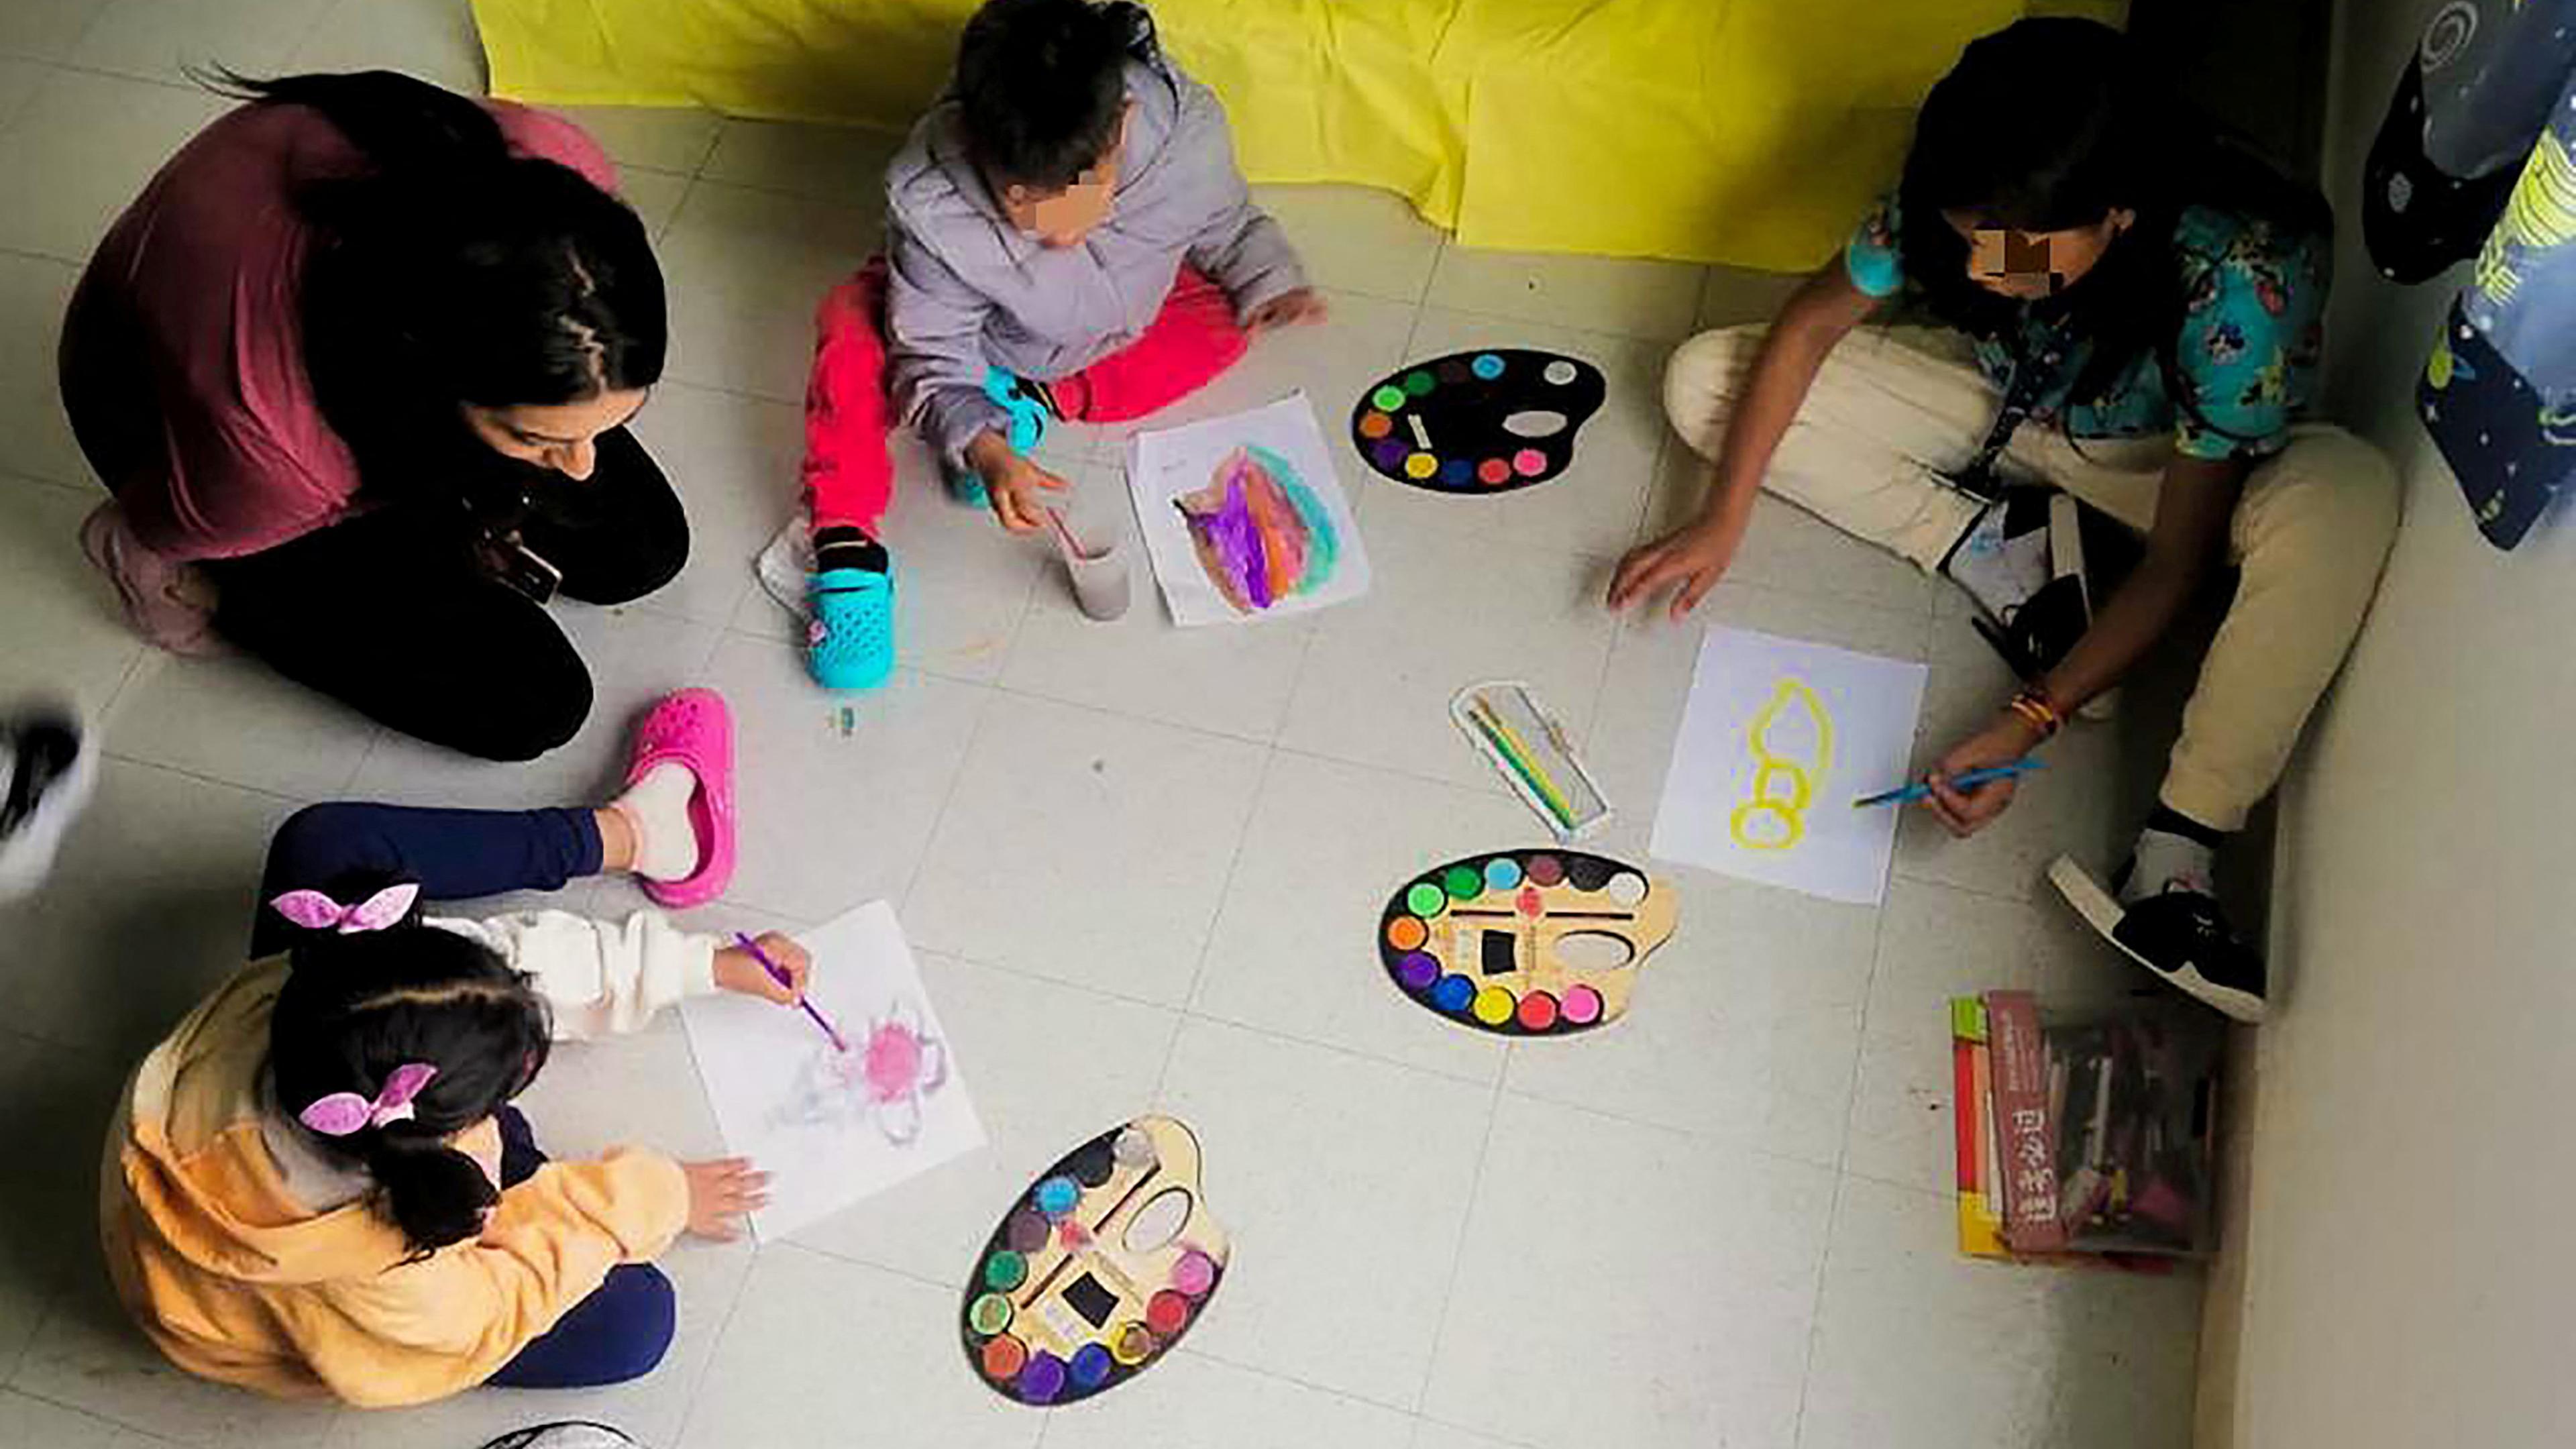 Drei der Kinder, die wochenlang alleine im kolumbianischen Dschungel lebten, sitzen mit einer Betreuerin am Boden und malen.